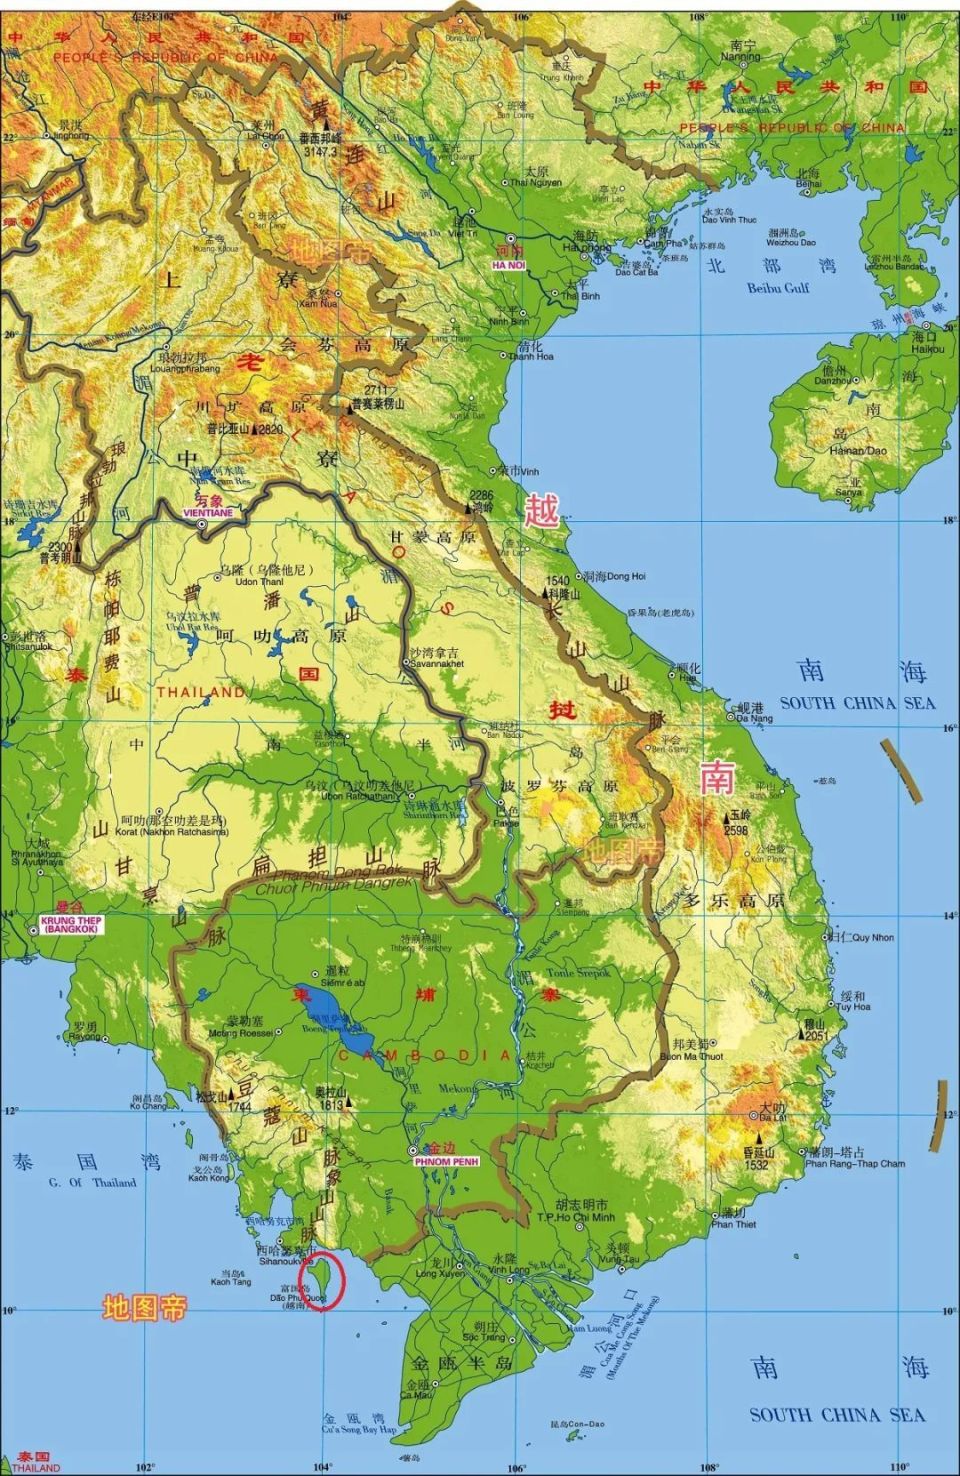 柬埔寨修运河,越南和美国为何反对?